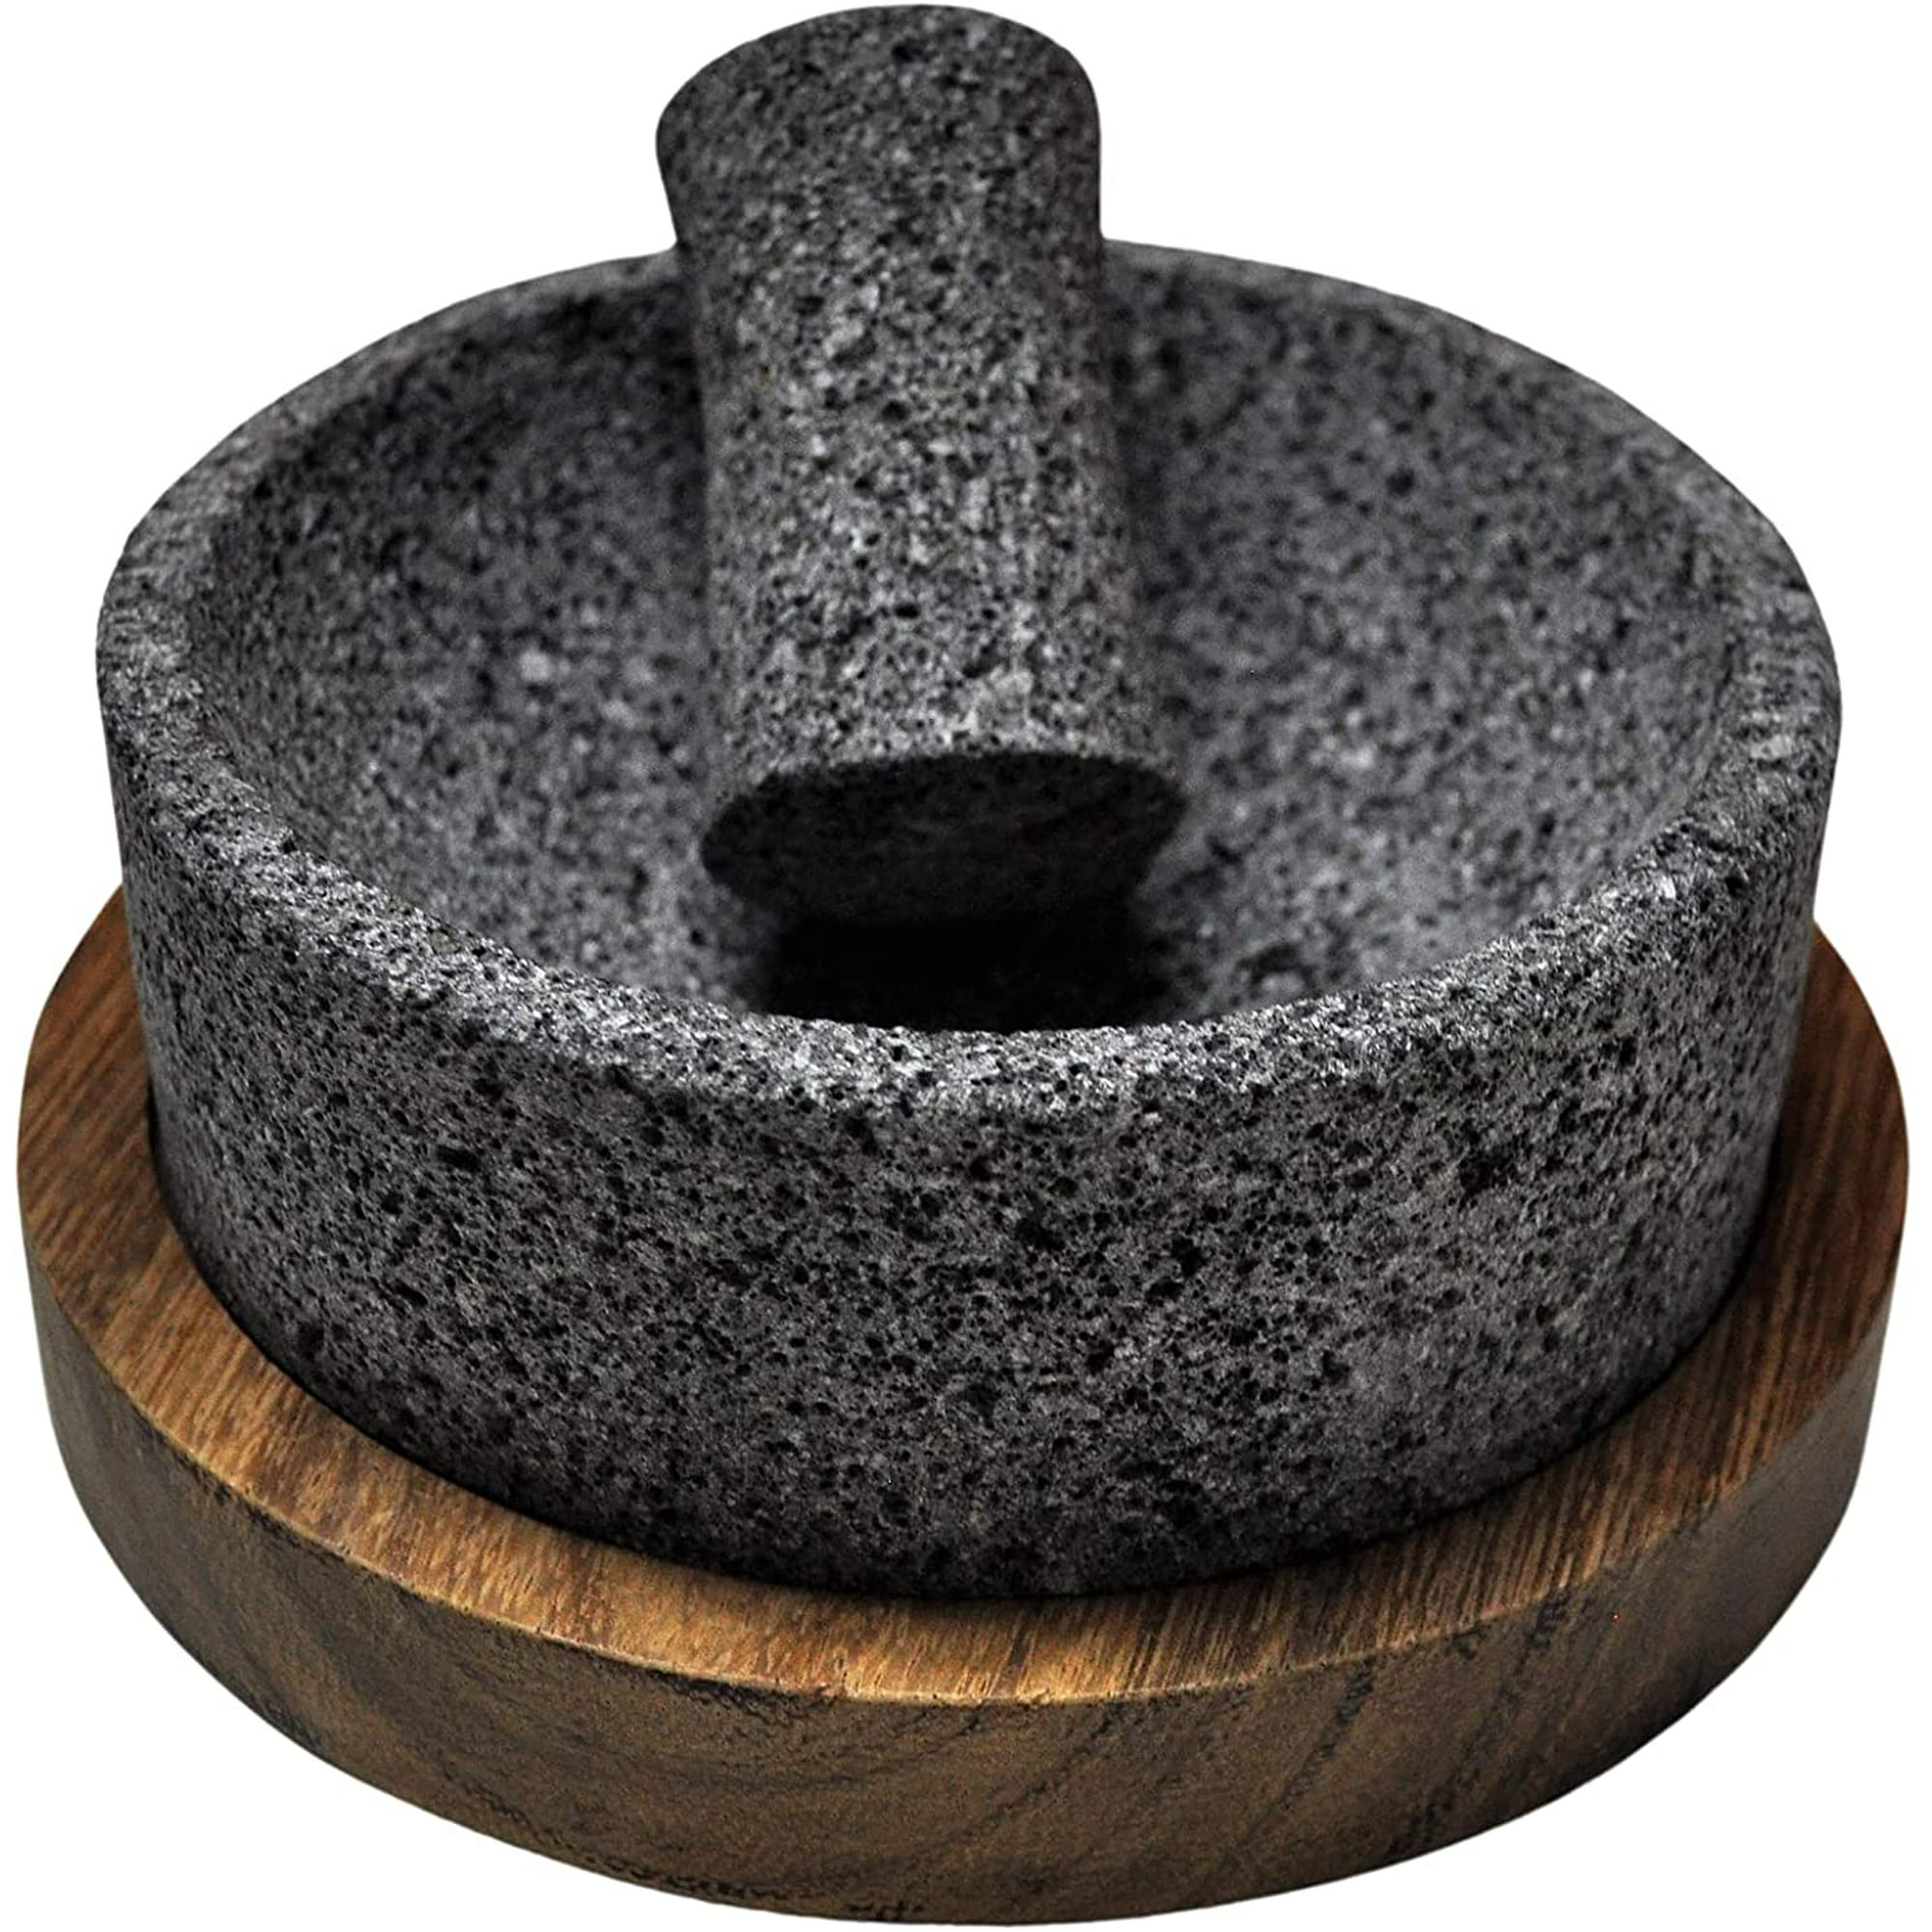 Molcajete chilmamolli de 15 cm de piedra volcánica con base de madera artesanal y tejolote, hecho orgullosamente por manos mexicanas cemcui chilmamolli